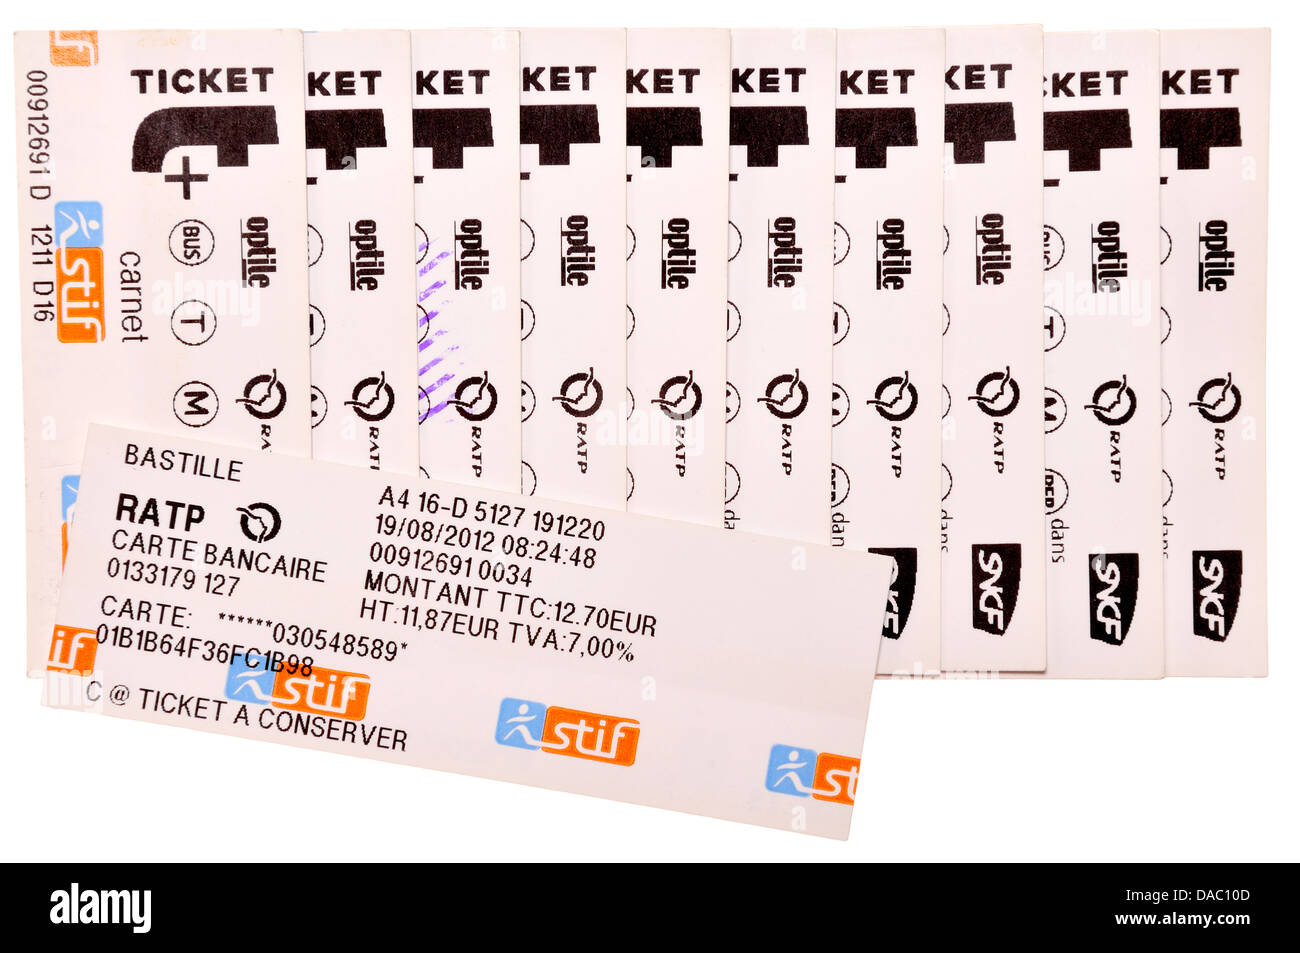 Les tickets de métro de Paris. 'Un' - carnet de 10 billets achetés ensemble  au rabais, avec réception Photo Stock - Alamy